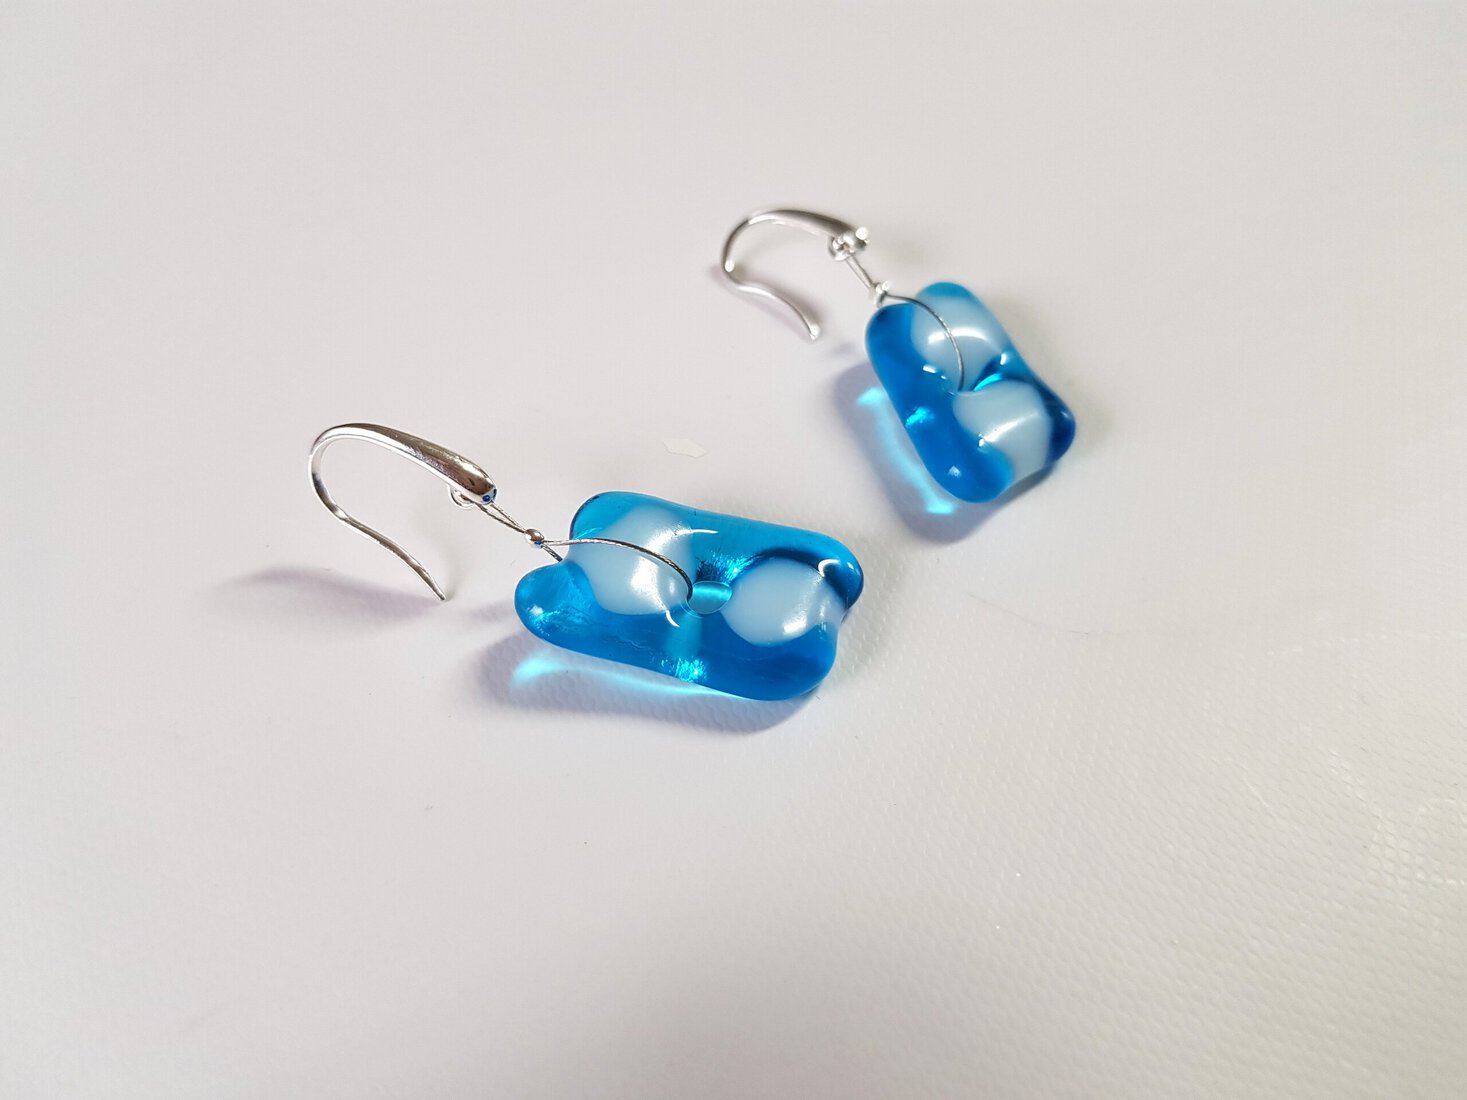 Lichtblauwe oorbellen van glas en zilver